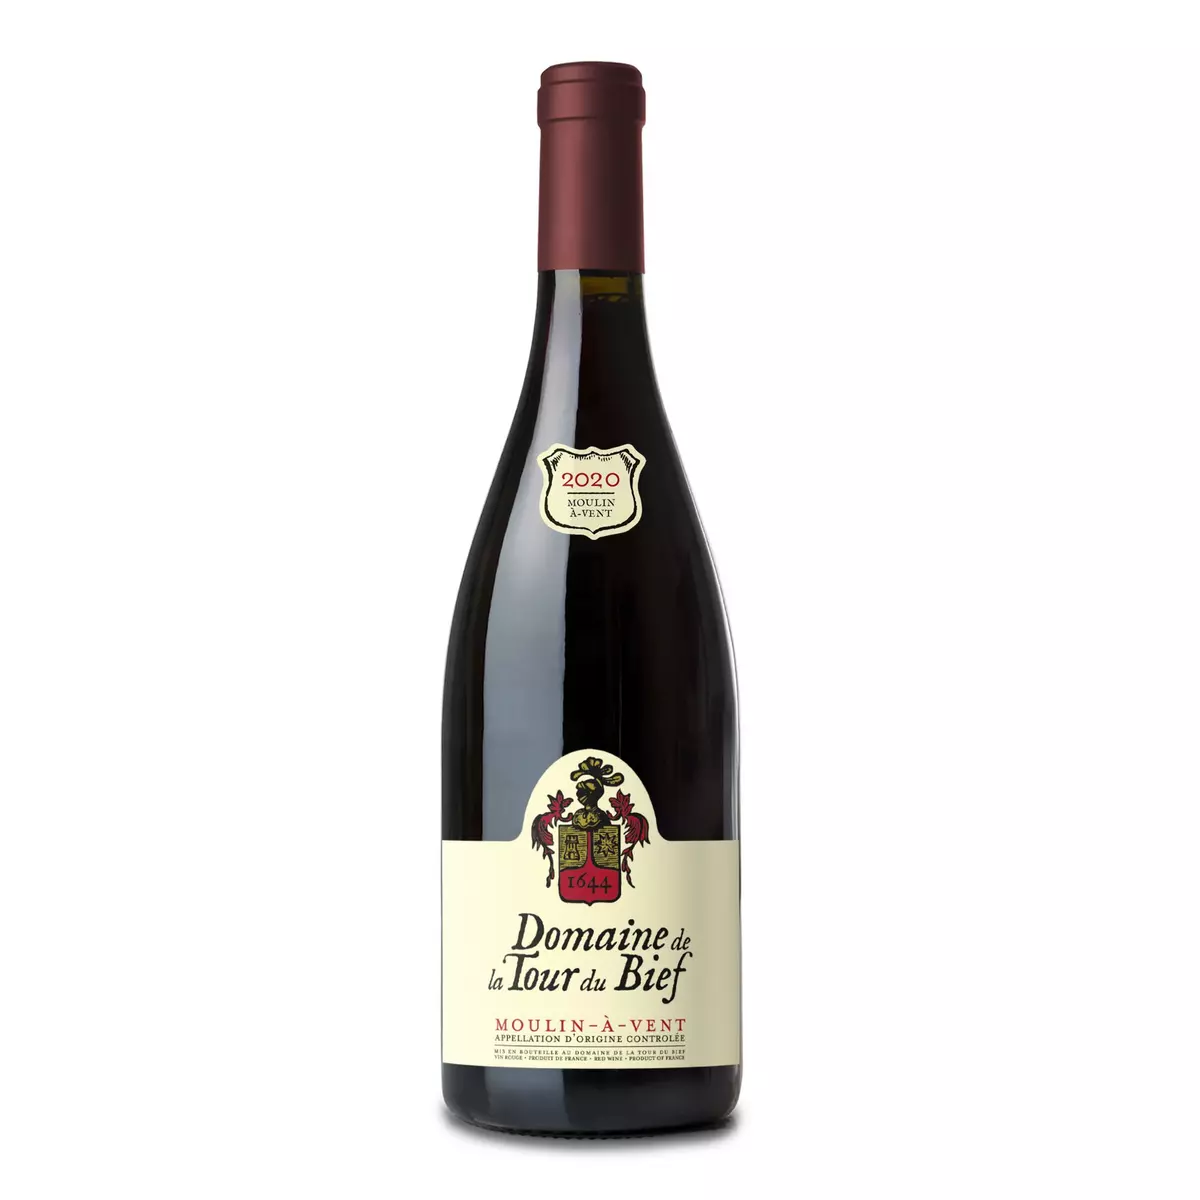 Vin rouge AOP Moulin-à-Vent Domaine de la Tour du Bief 2020 75cl